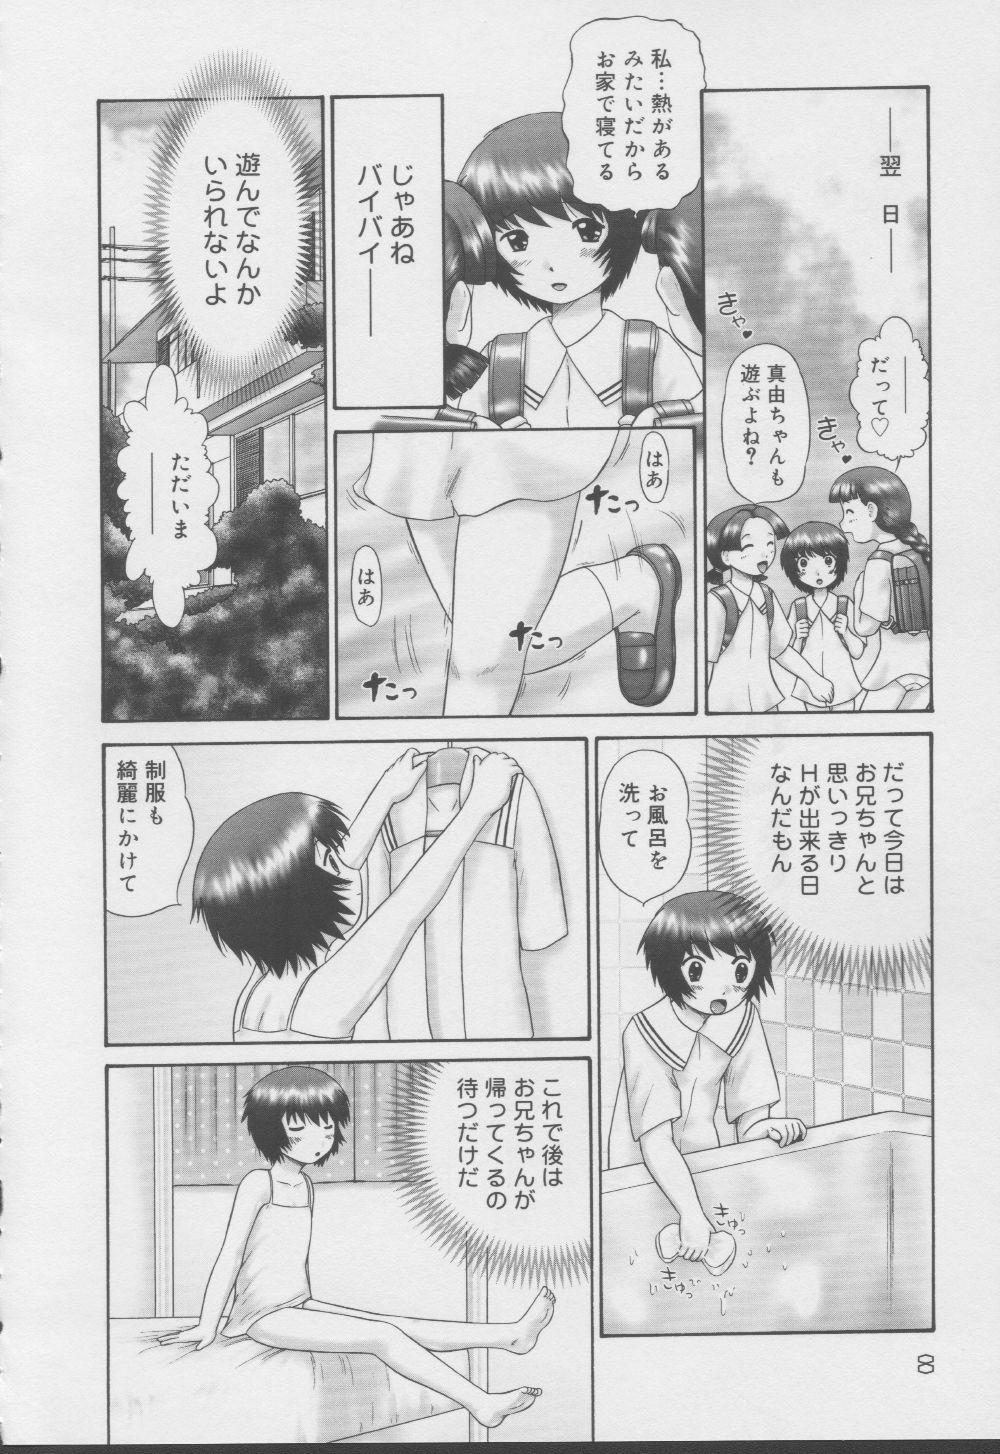 Publico Kazoku no Shisen Shisshiki 2 Bj - Page 8